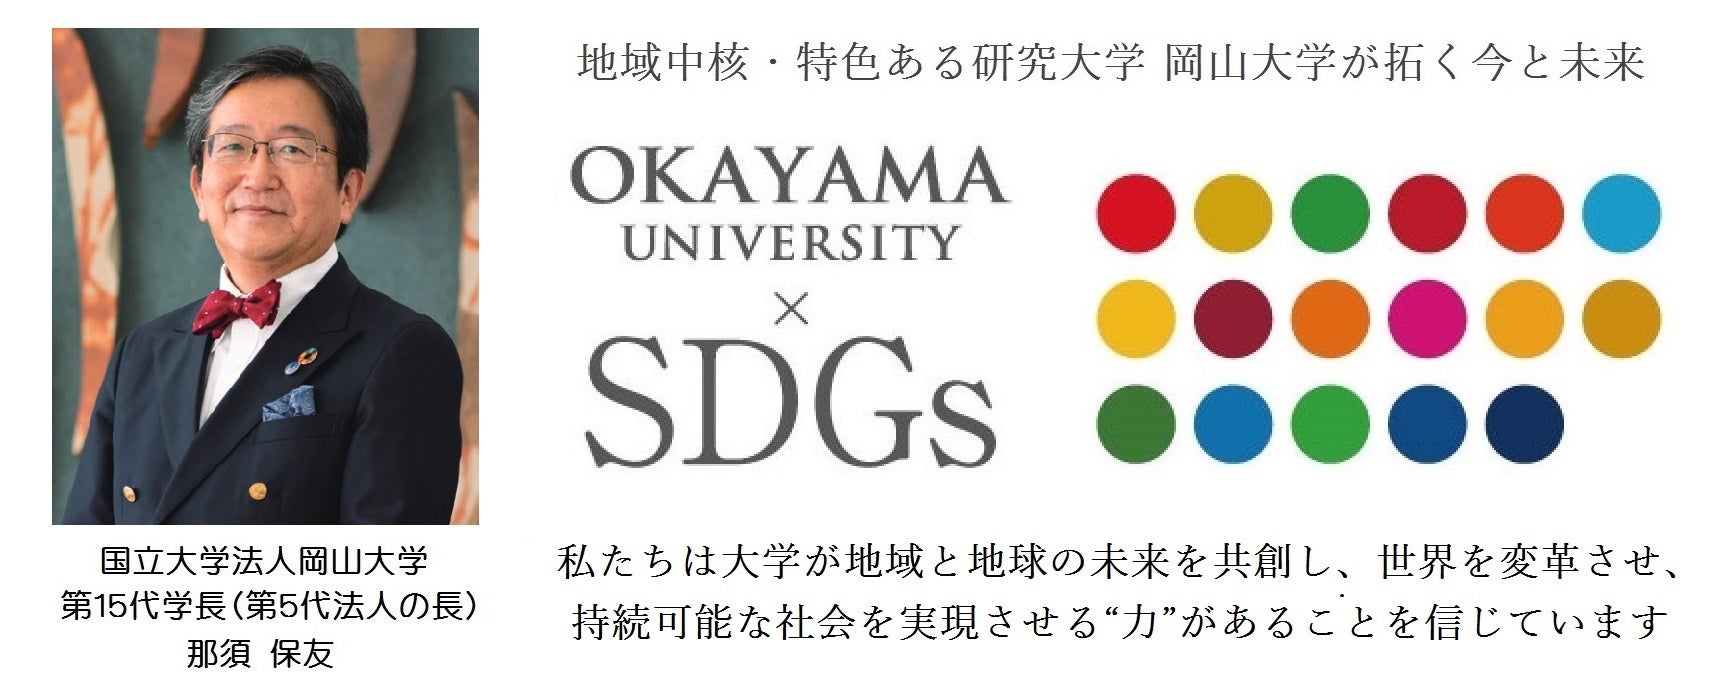 【岡山大学】岡山大学第7回金光賞授賞式を盛大に開催しました